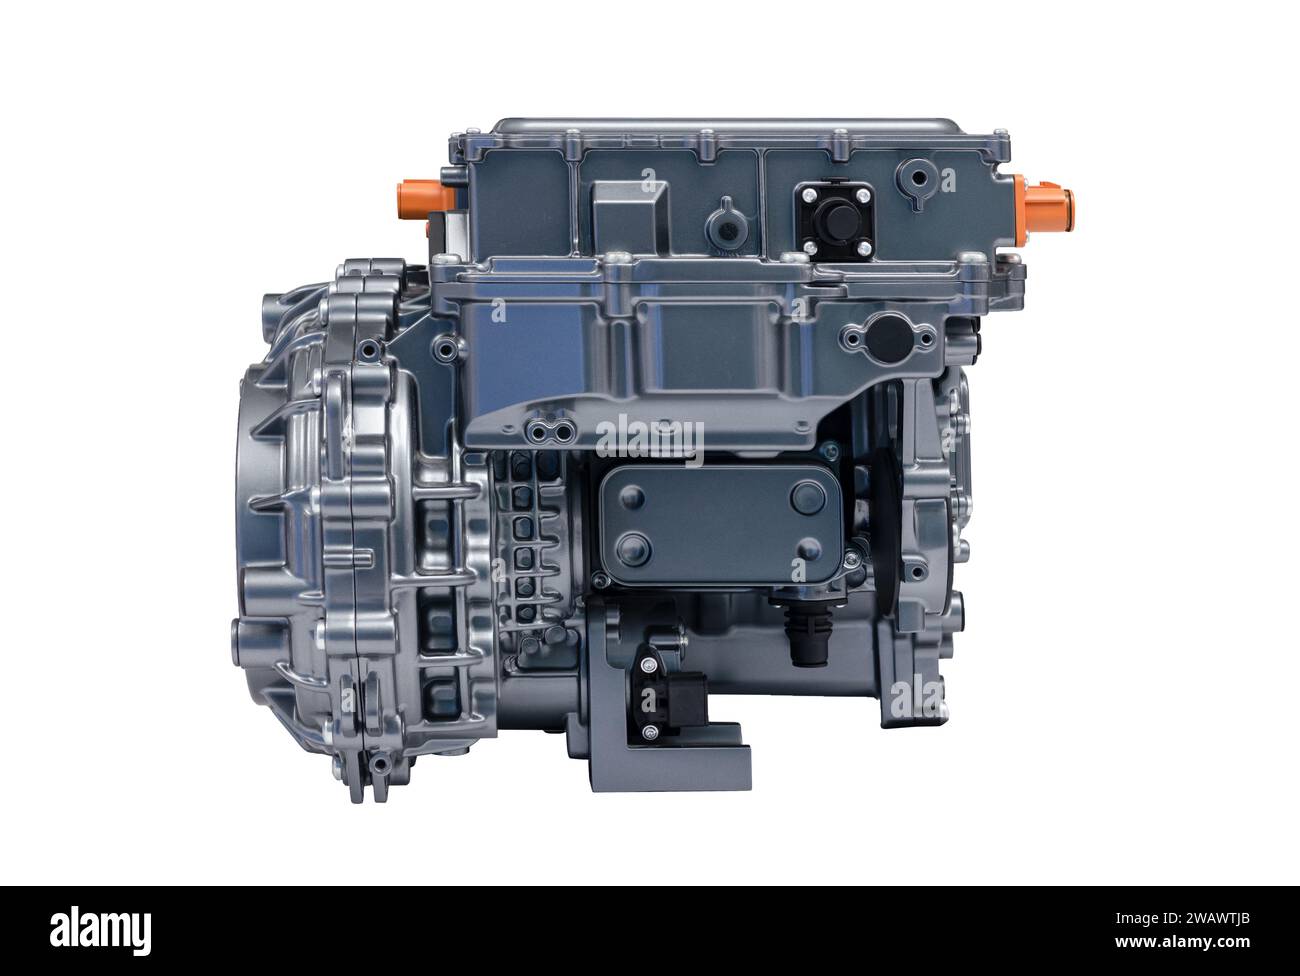 Blocco motore per auto EV parte della moderna tecnologia dei veicoli elettrici potenza ad alte prestazioni e isolamento del sistema a emissioni zero nel rispetto dell'ambiente Foto Stock